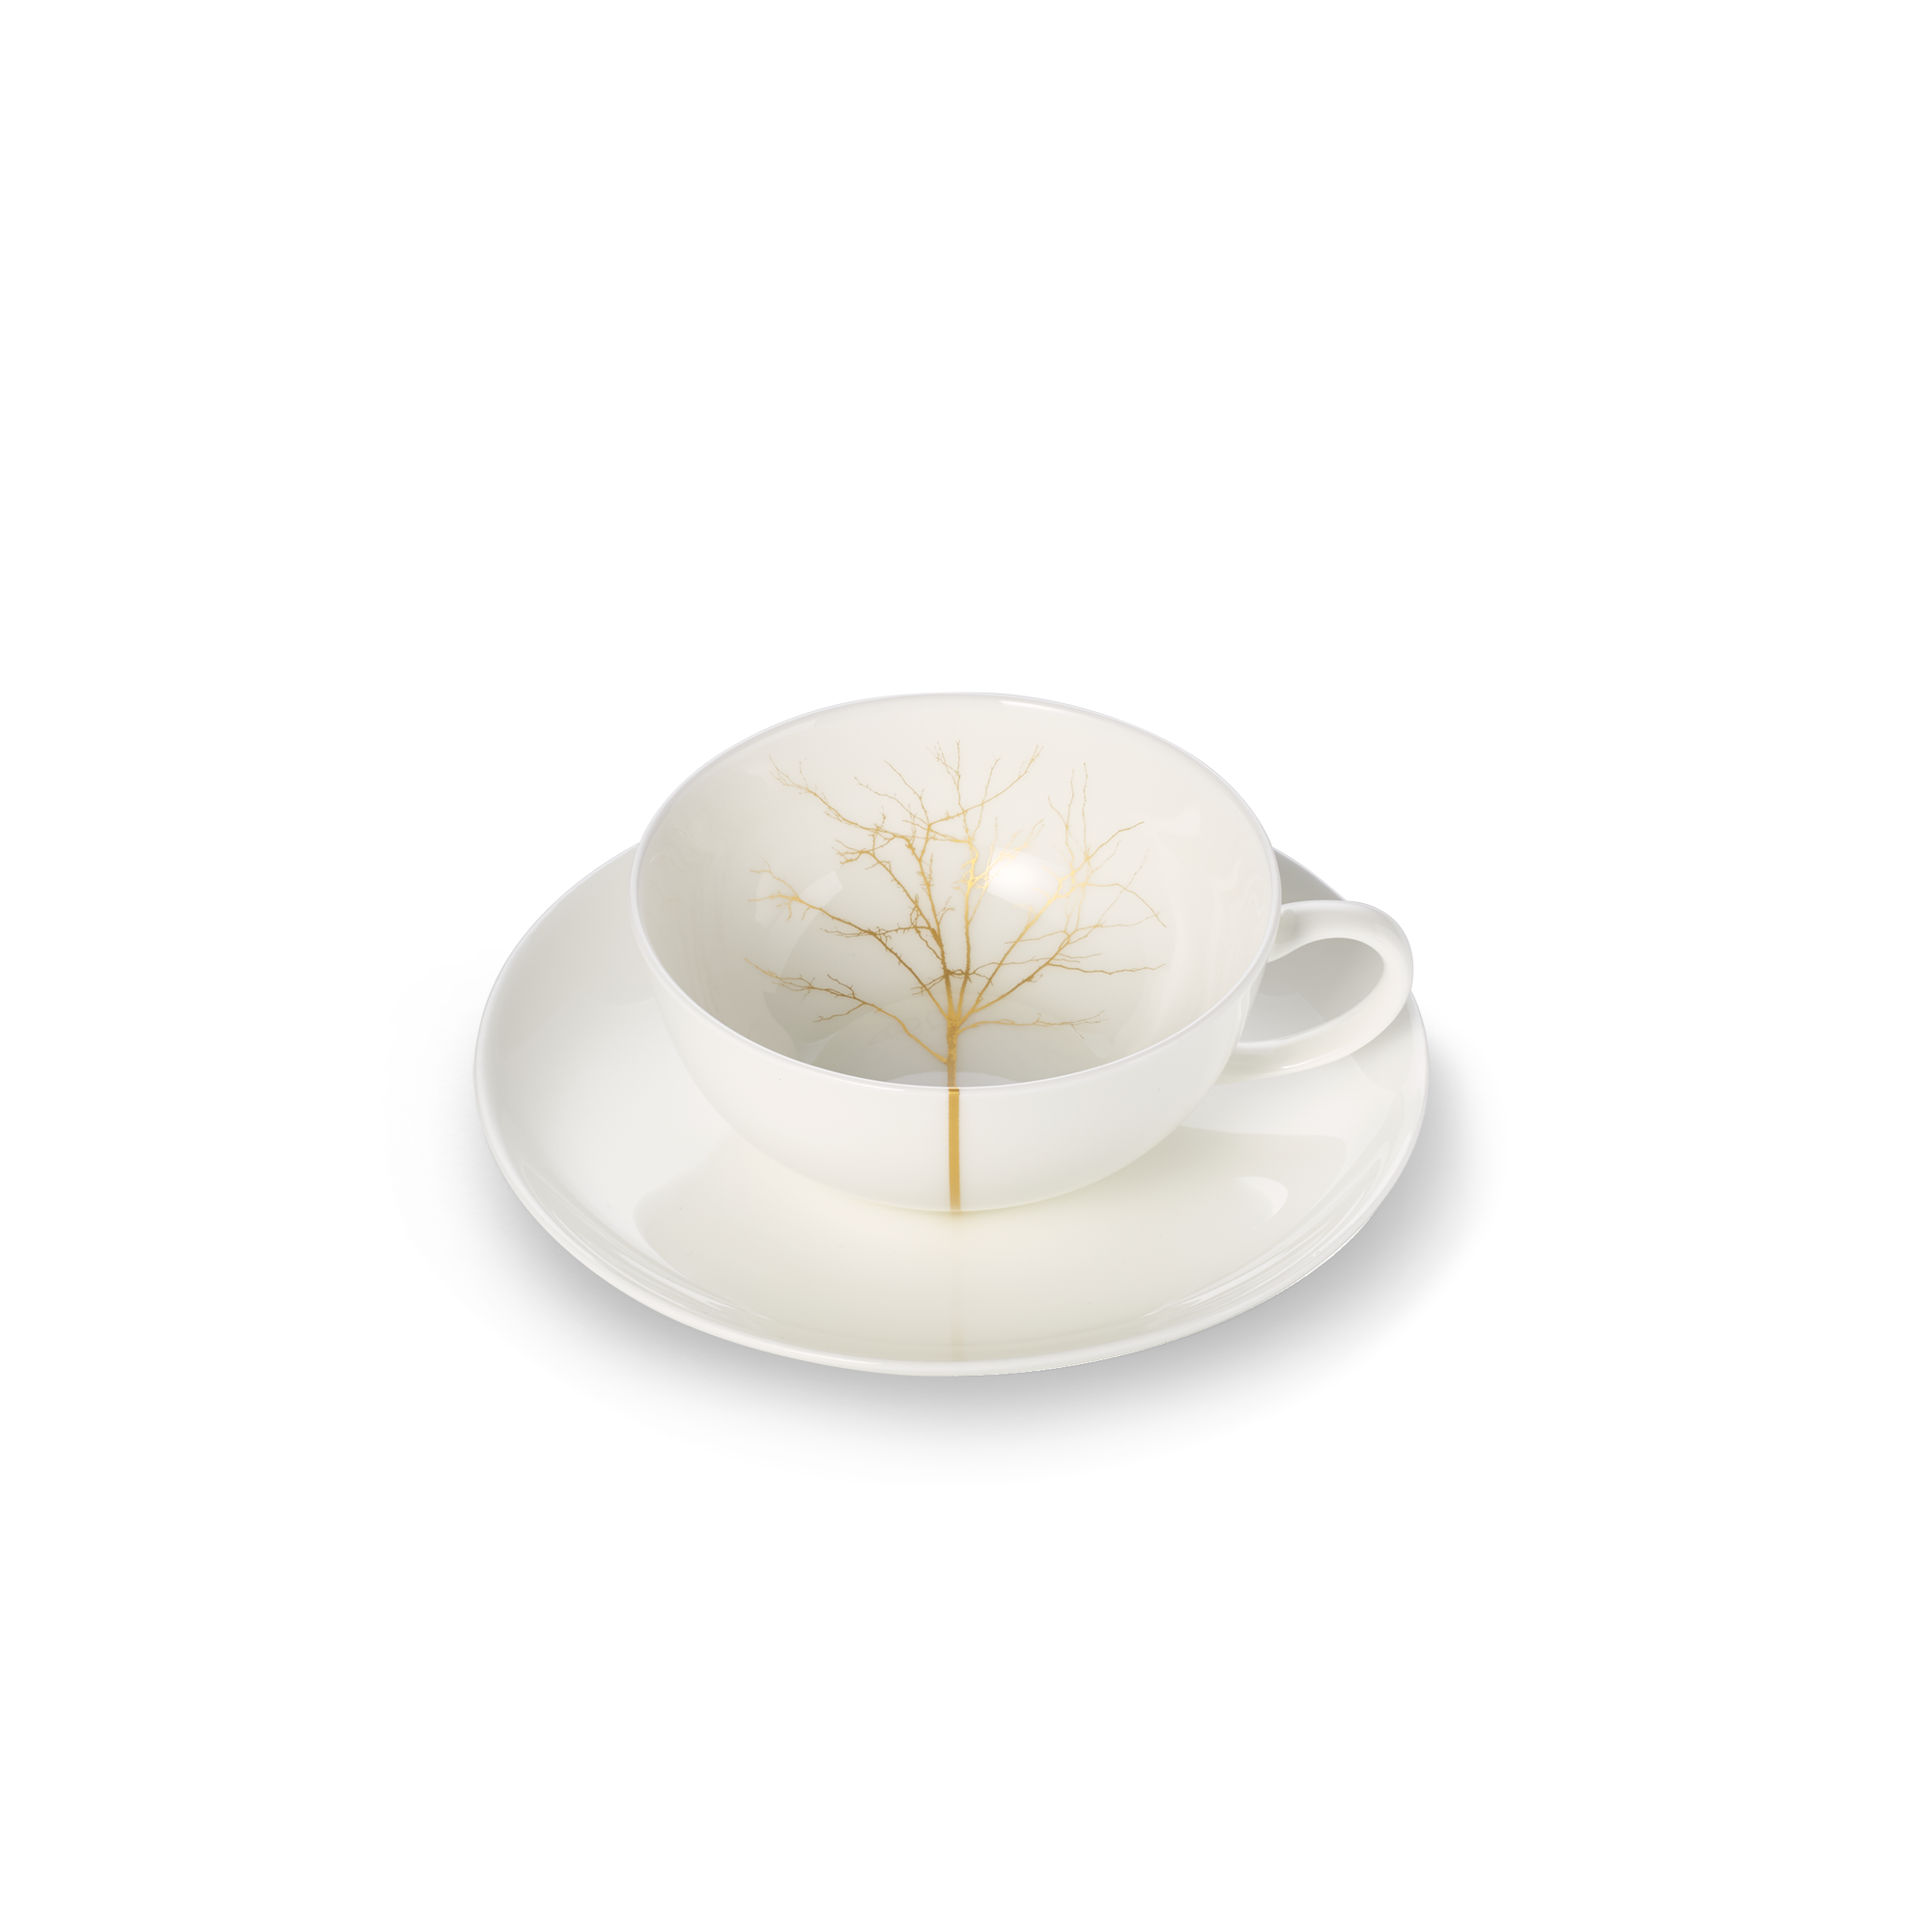 Golden Forest teacup